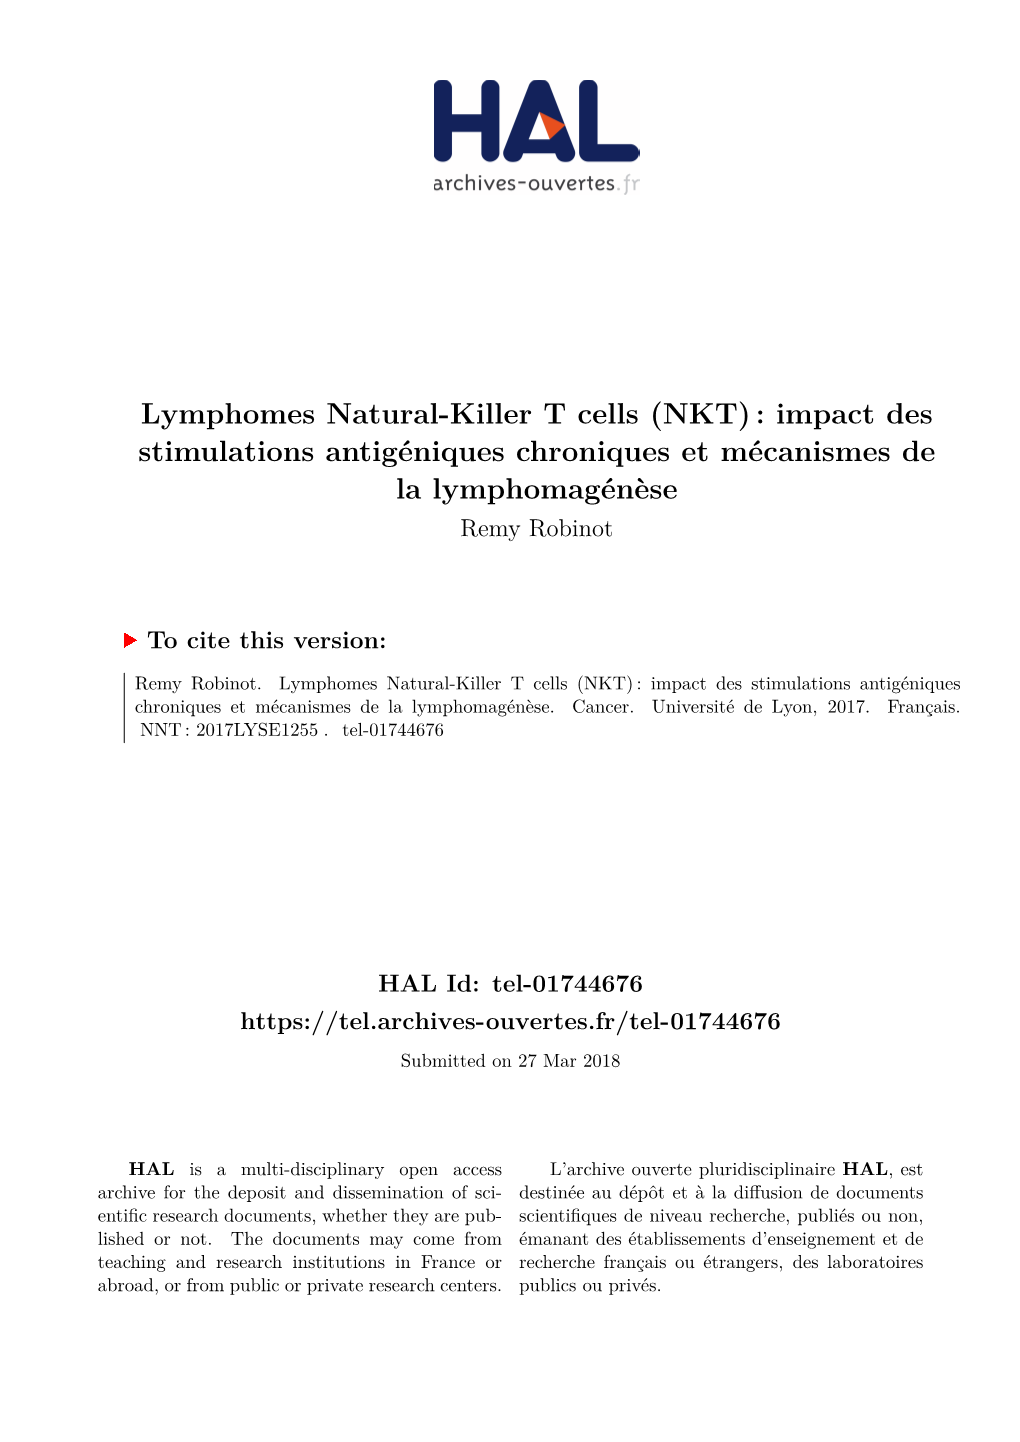 Lymphomes Natural-Killer T Cells (NKT) : Impact Des Stimulations Antigéniques Chroniques Et Mécanismes De La Lymphomagénèse Remy Robinot